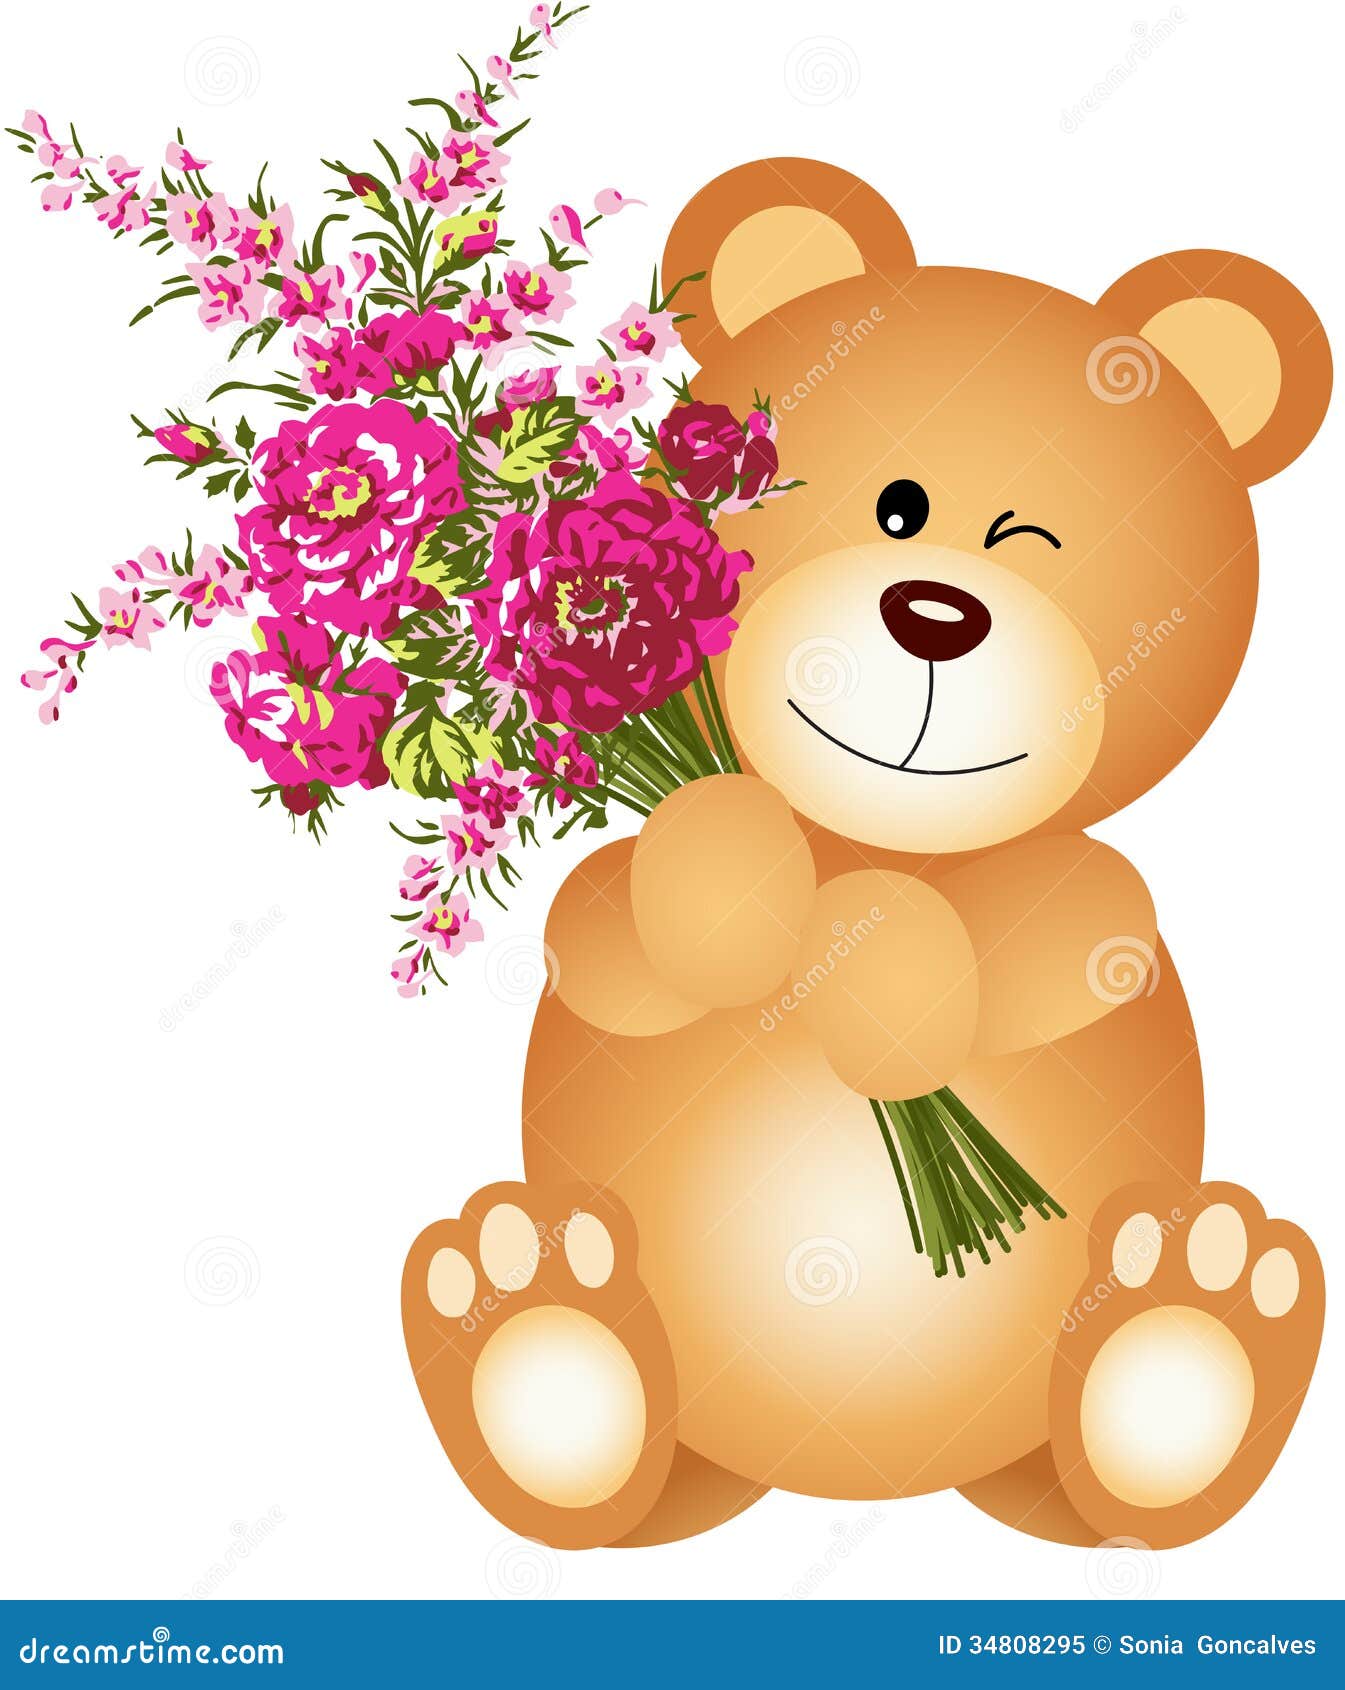 teddy bear with flowers clipart - photo #27